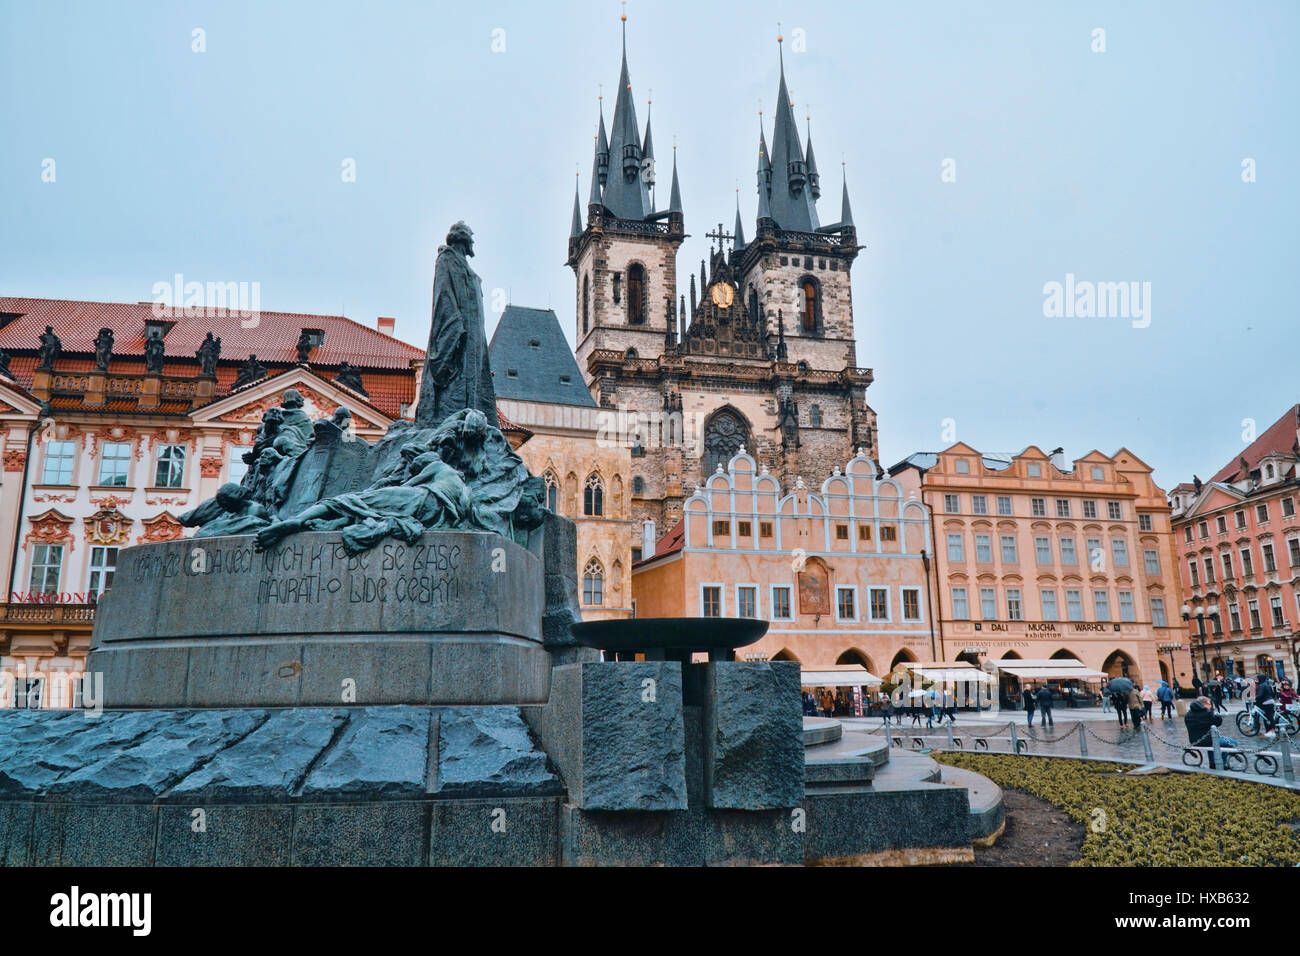 Großen Denkmal in der Mitte des Altstädter Ring in Prag - Prag / Tschechien - 20. März 2017 Stockfoto